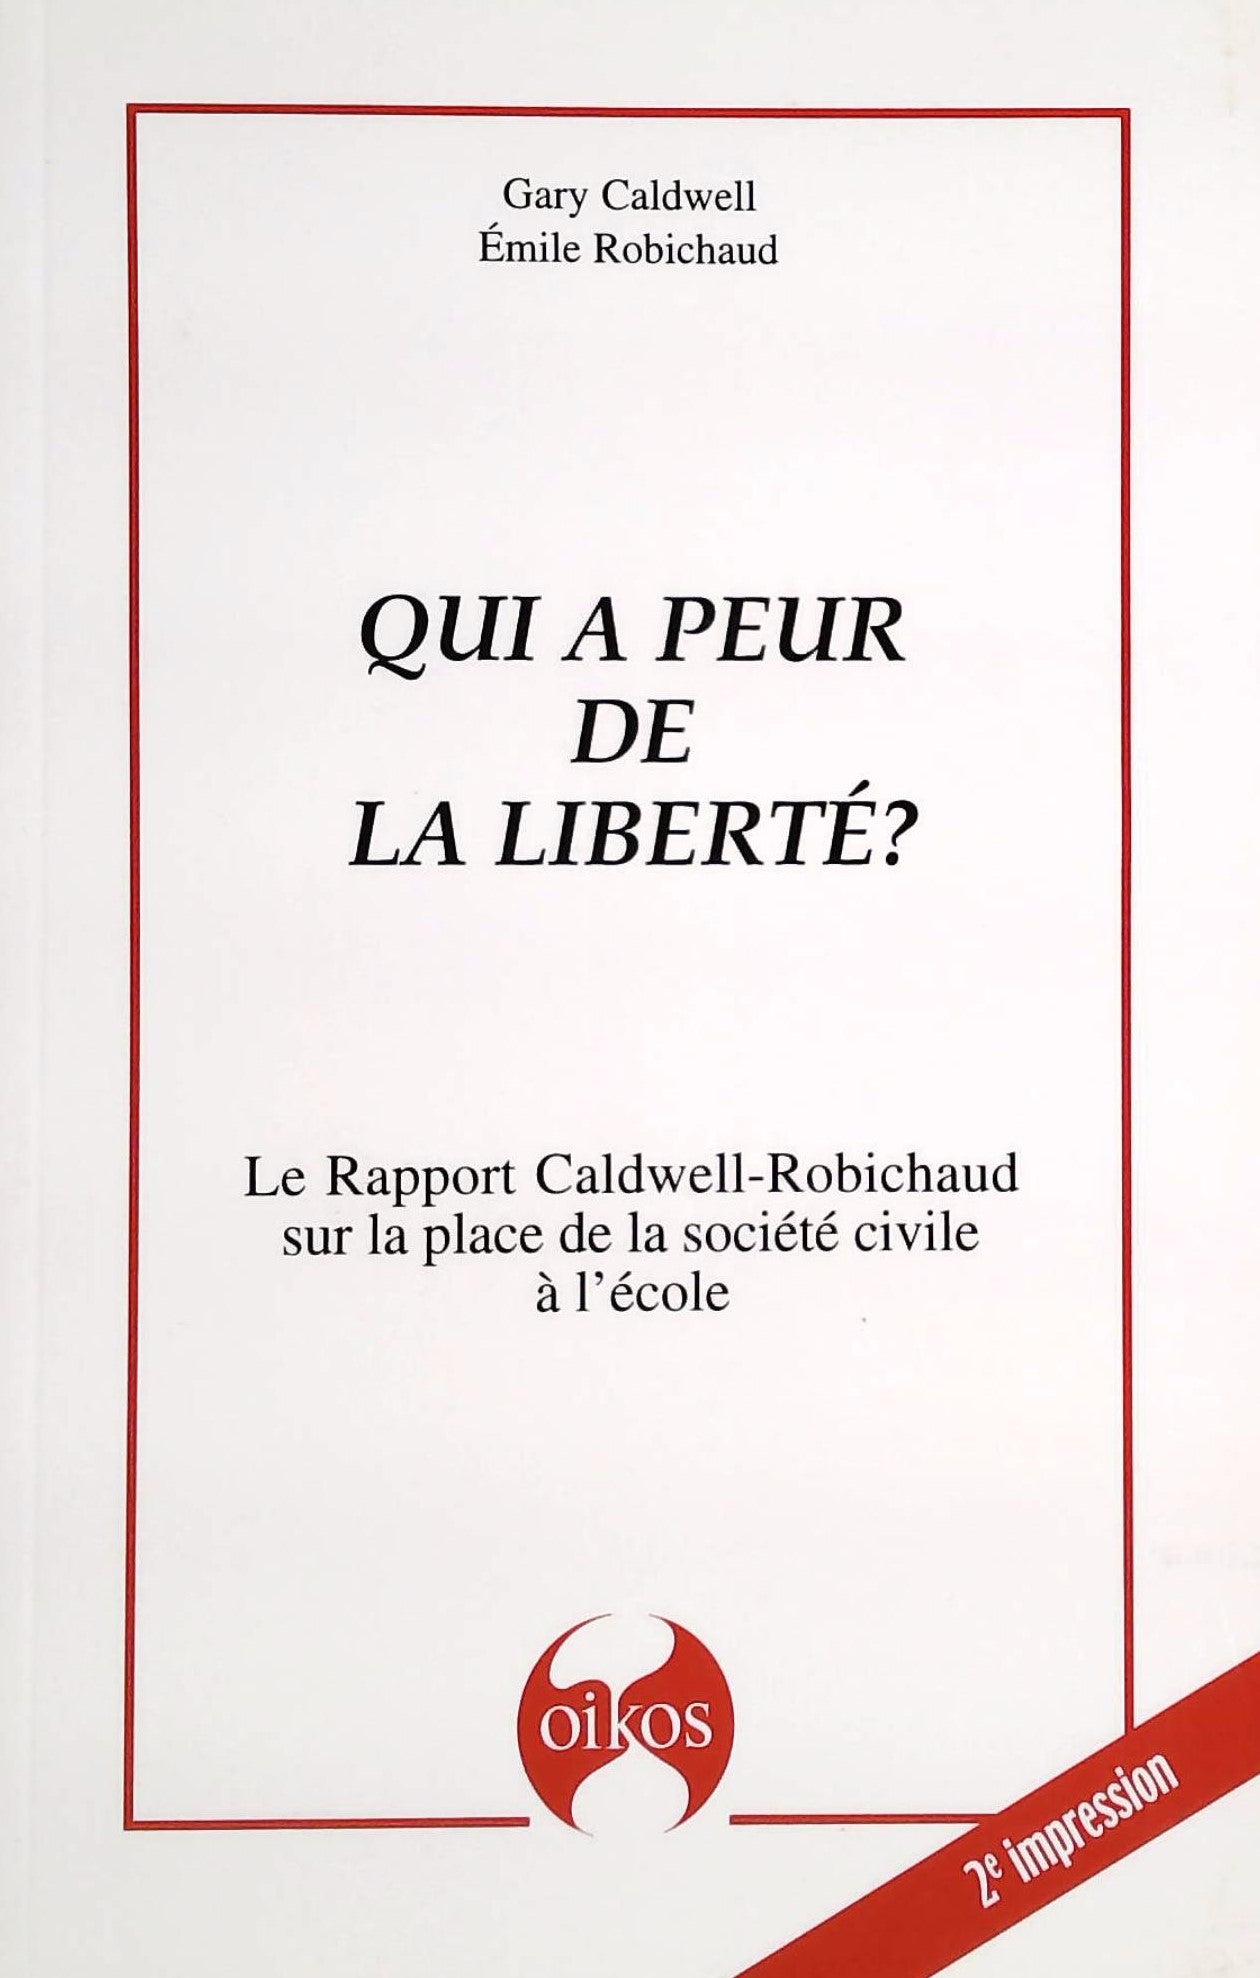 Livre ISBN 2980686107 Qui a peur de la liberté? : Le rapport Caldwell-Robichaud sur la place de la société civile à l'école (Gary Caldwell)